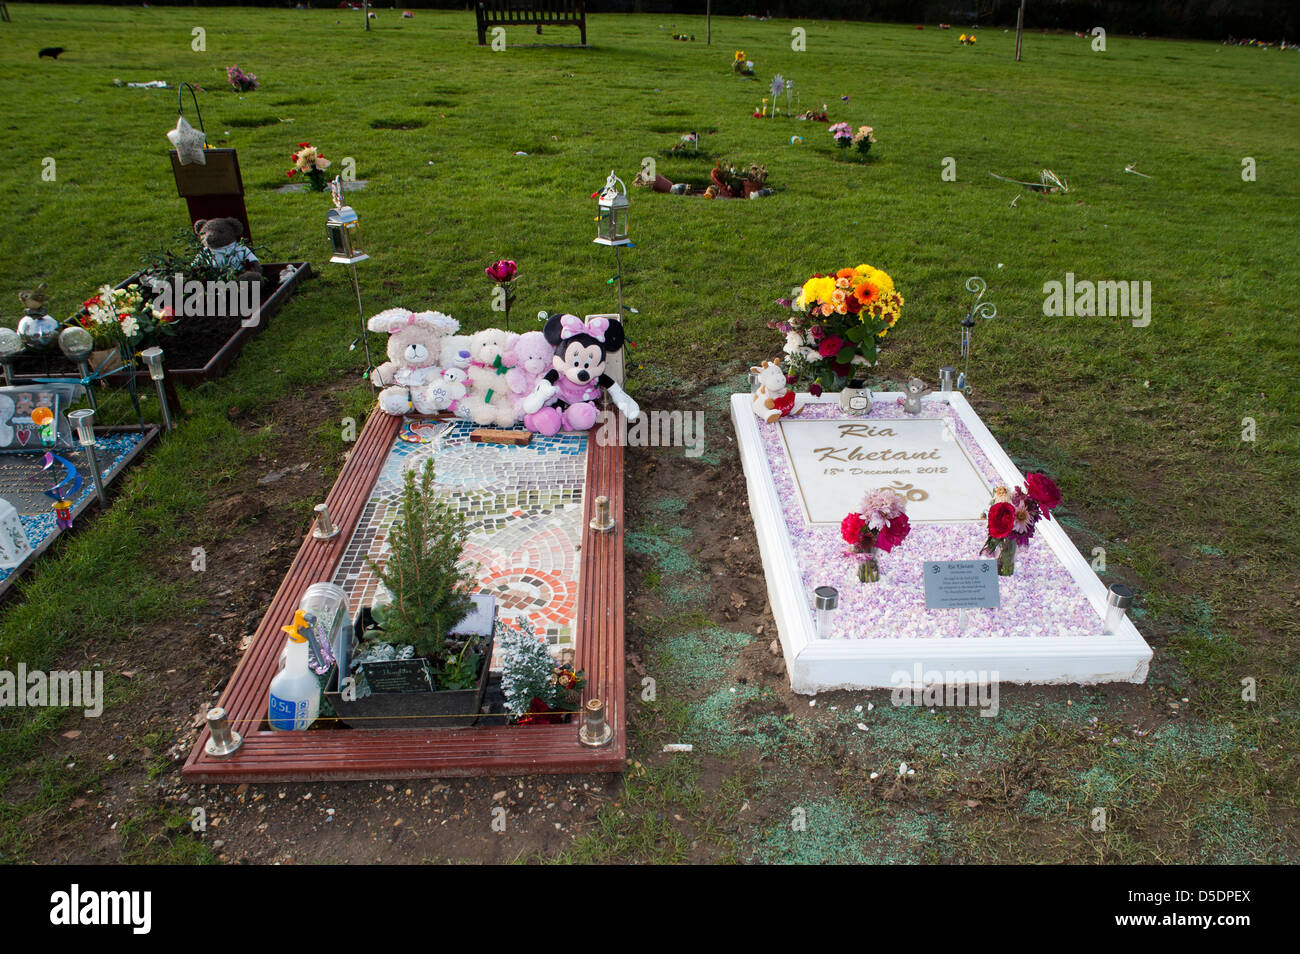 Brent a fourni un espace dans le cimetière pour la communauté musulmane depuis 1980. Brent cimetières permettent seulement ou en bois cercueils biodégradables ou caske Banque D'Images